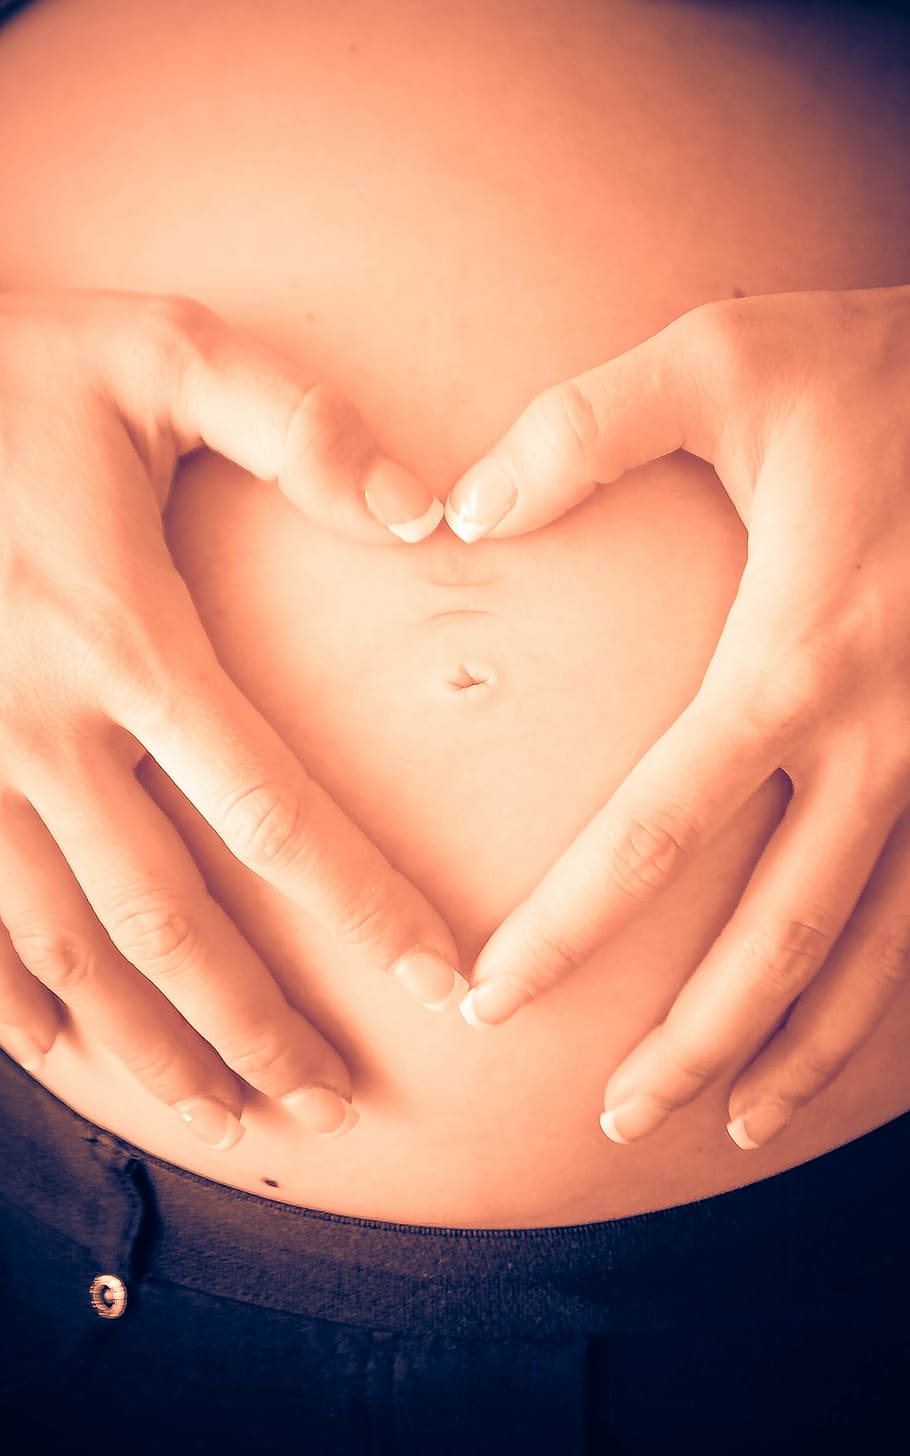 embarazada, mujer, tenencia, vientre, mamá, altavoz, maternidad, embarazo, bebé, corazón